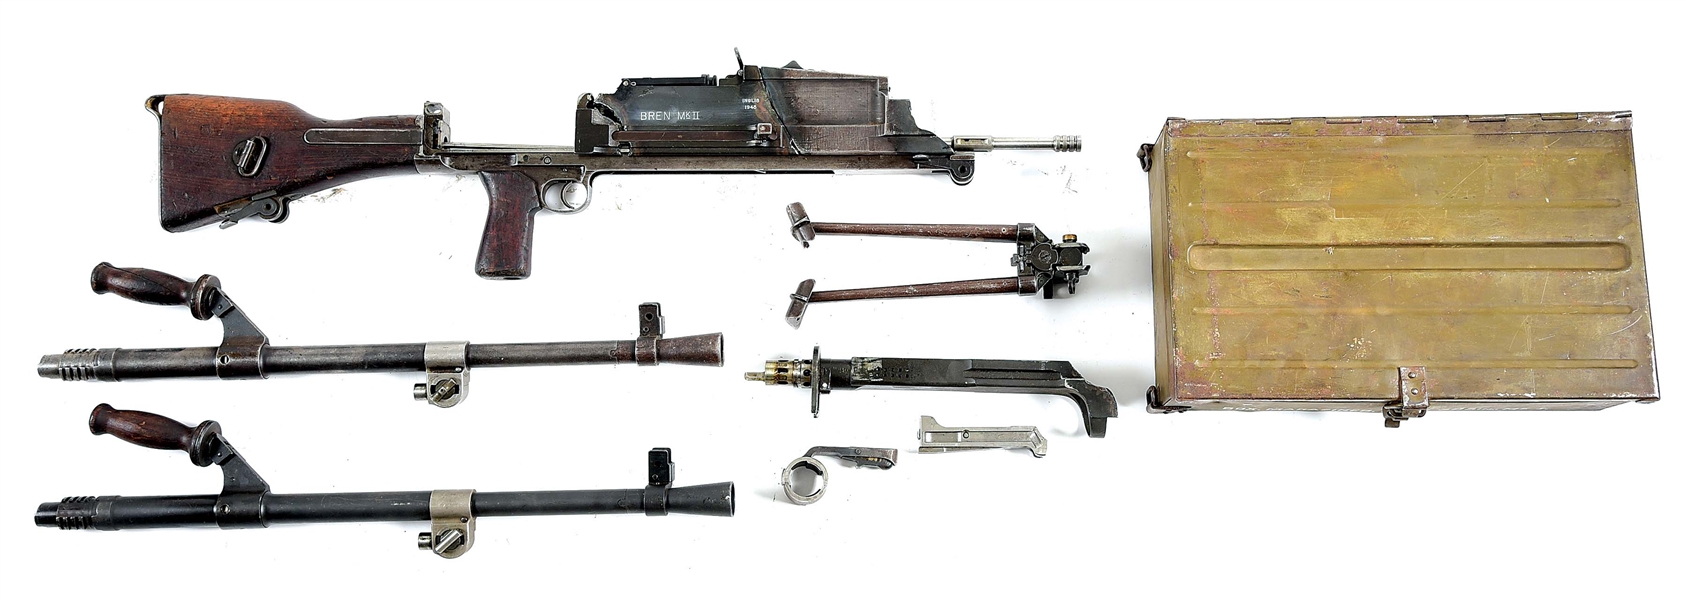 BRITISH BREN MACHINE GUN PARTS KIT WITH SPARE BARREL AND 12 MAGAZINES.